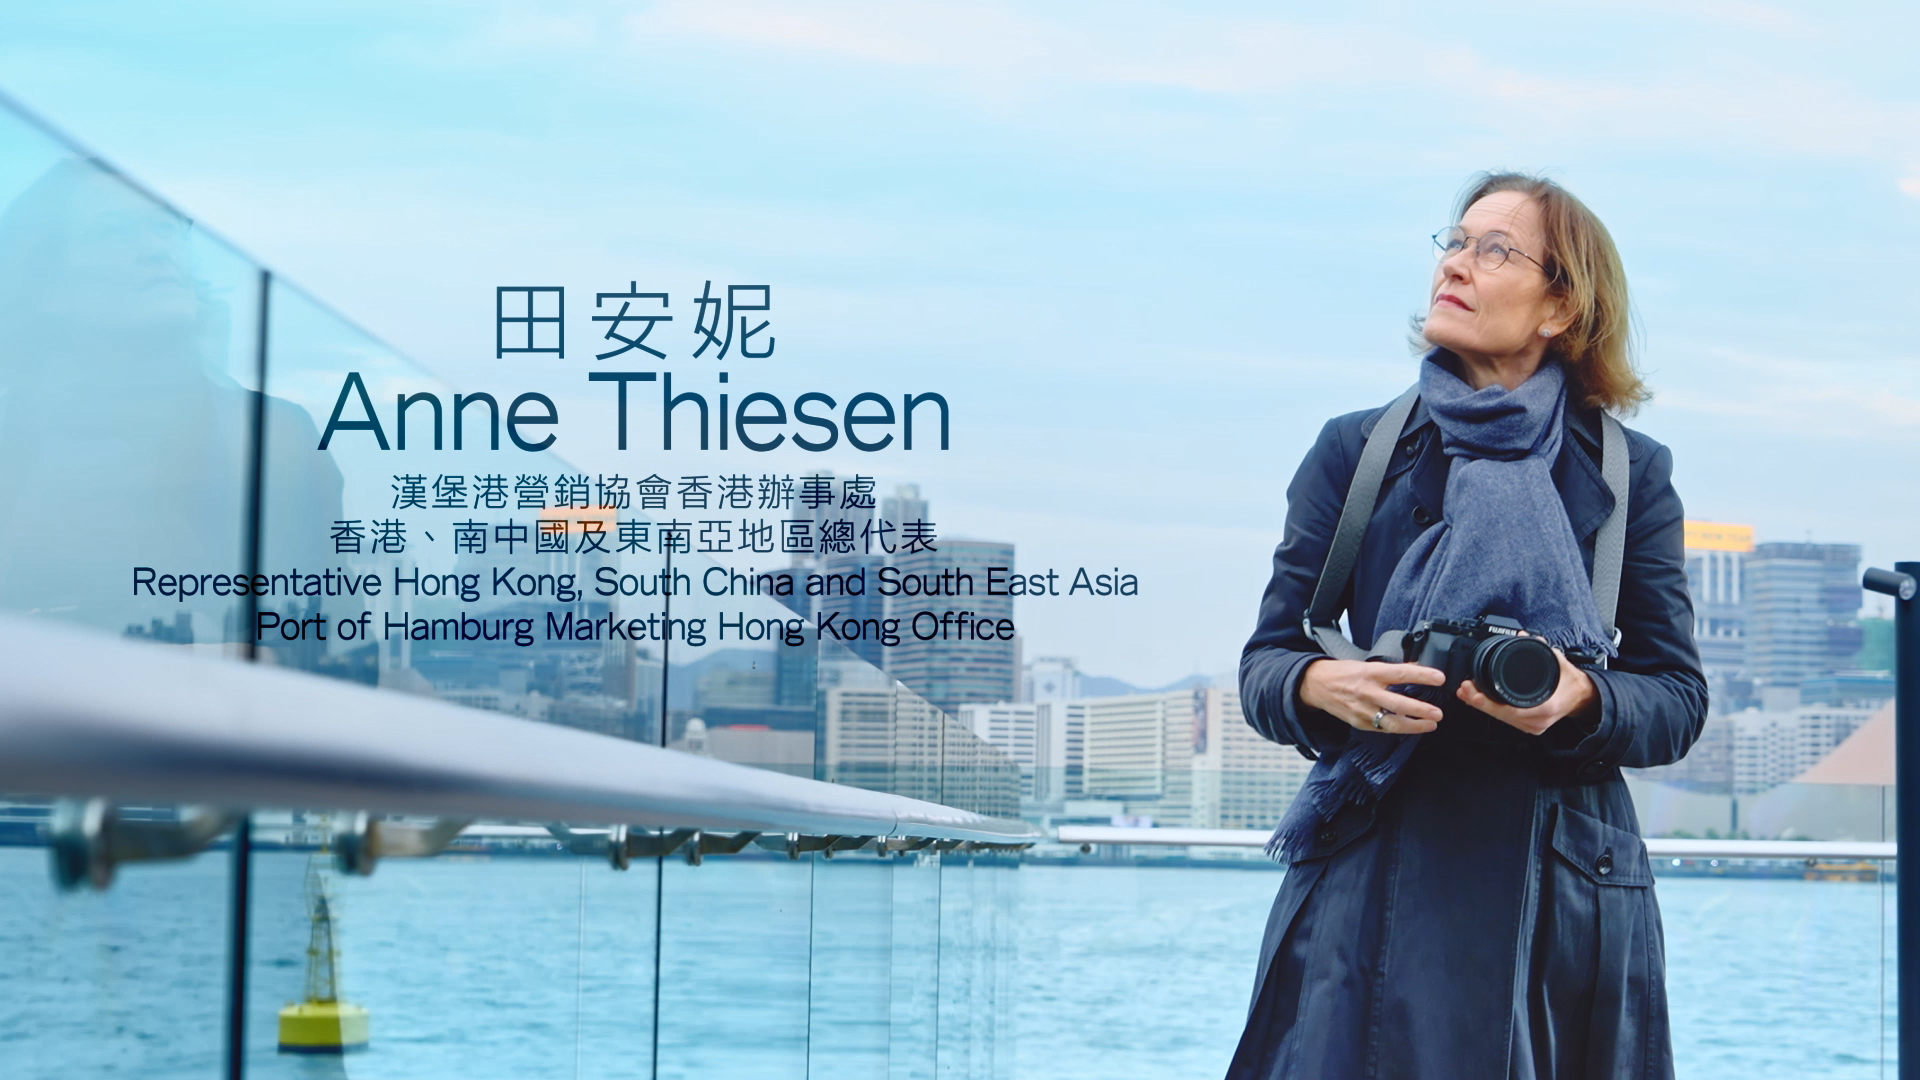 政府今日（十二月二十三日）推出「搶人才」宣傳片，介紹香港的優勢和機遇，積極招攬人才來港發展。圖示漢堡港營銷協會香港辦事處香港、南中國及東南亞地區總代表田安妮。